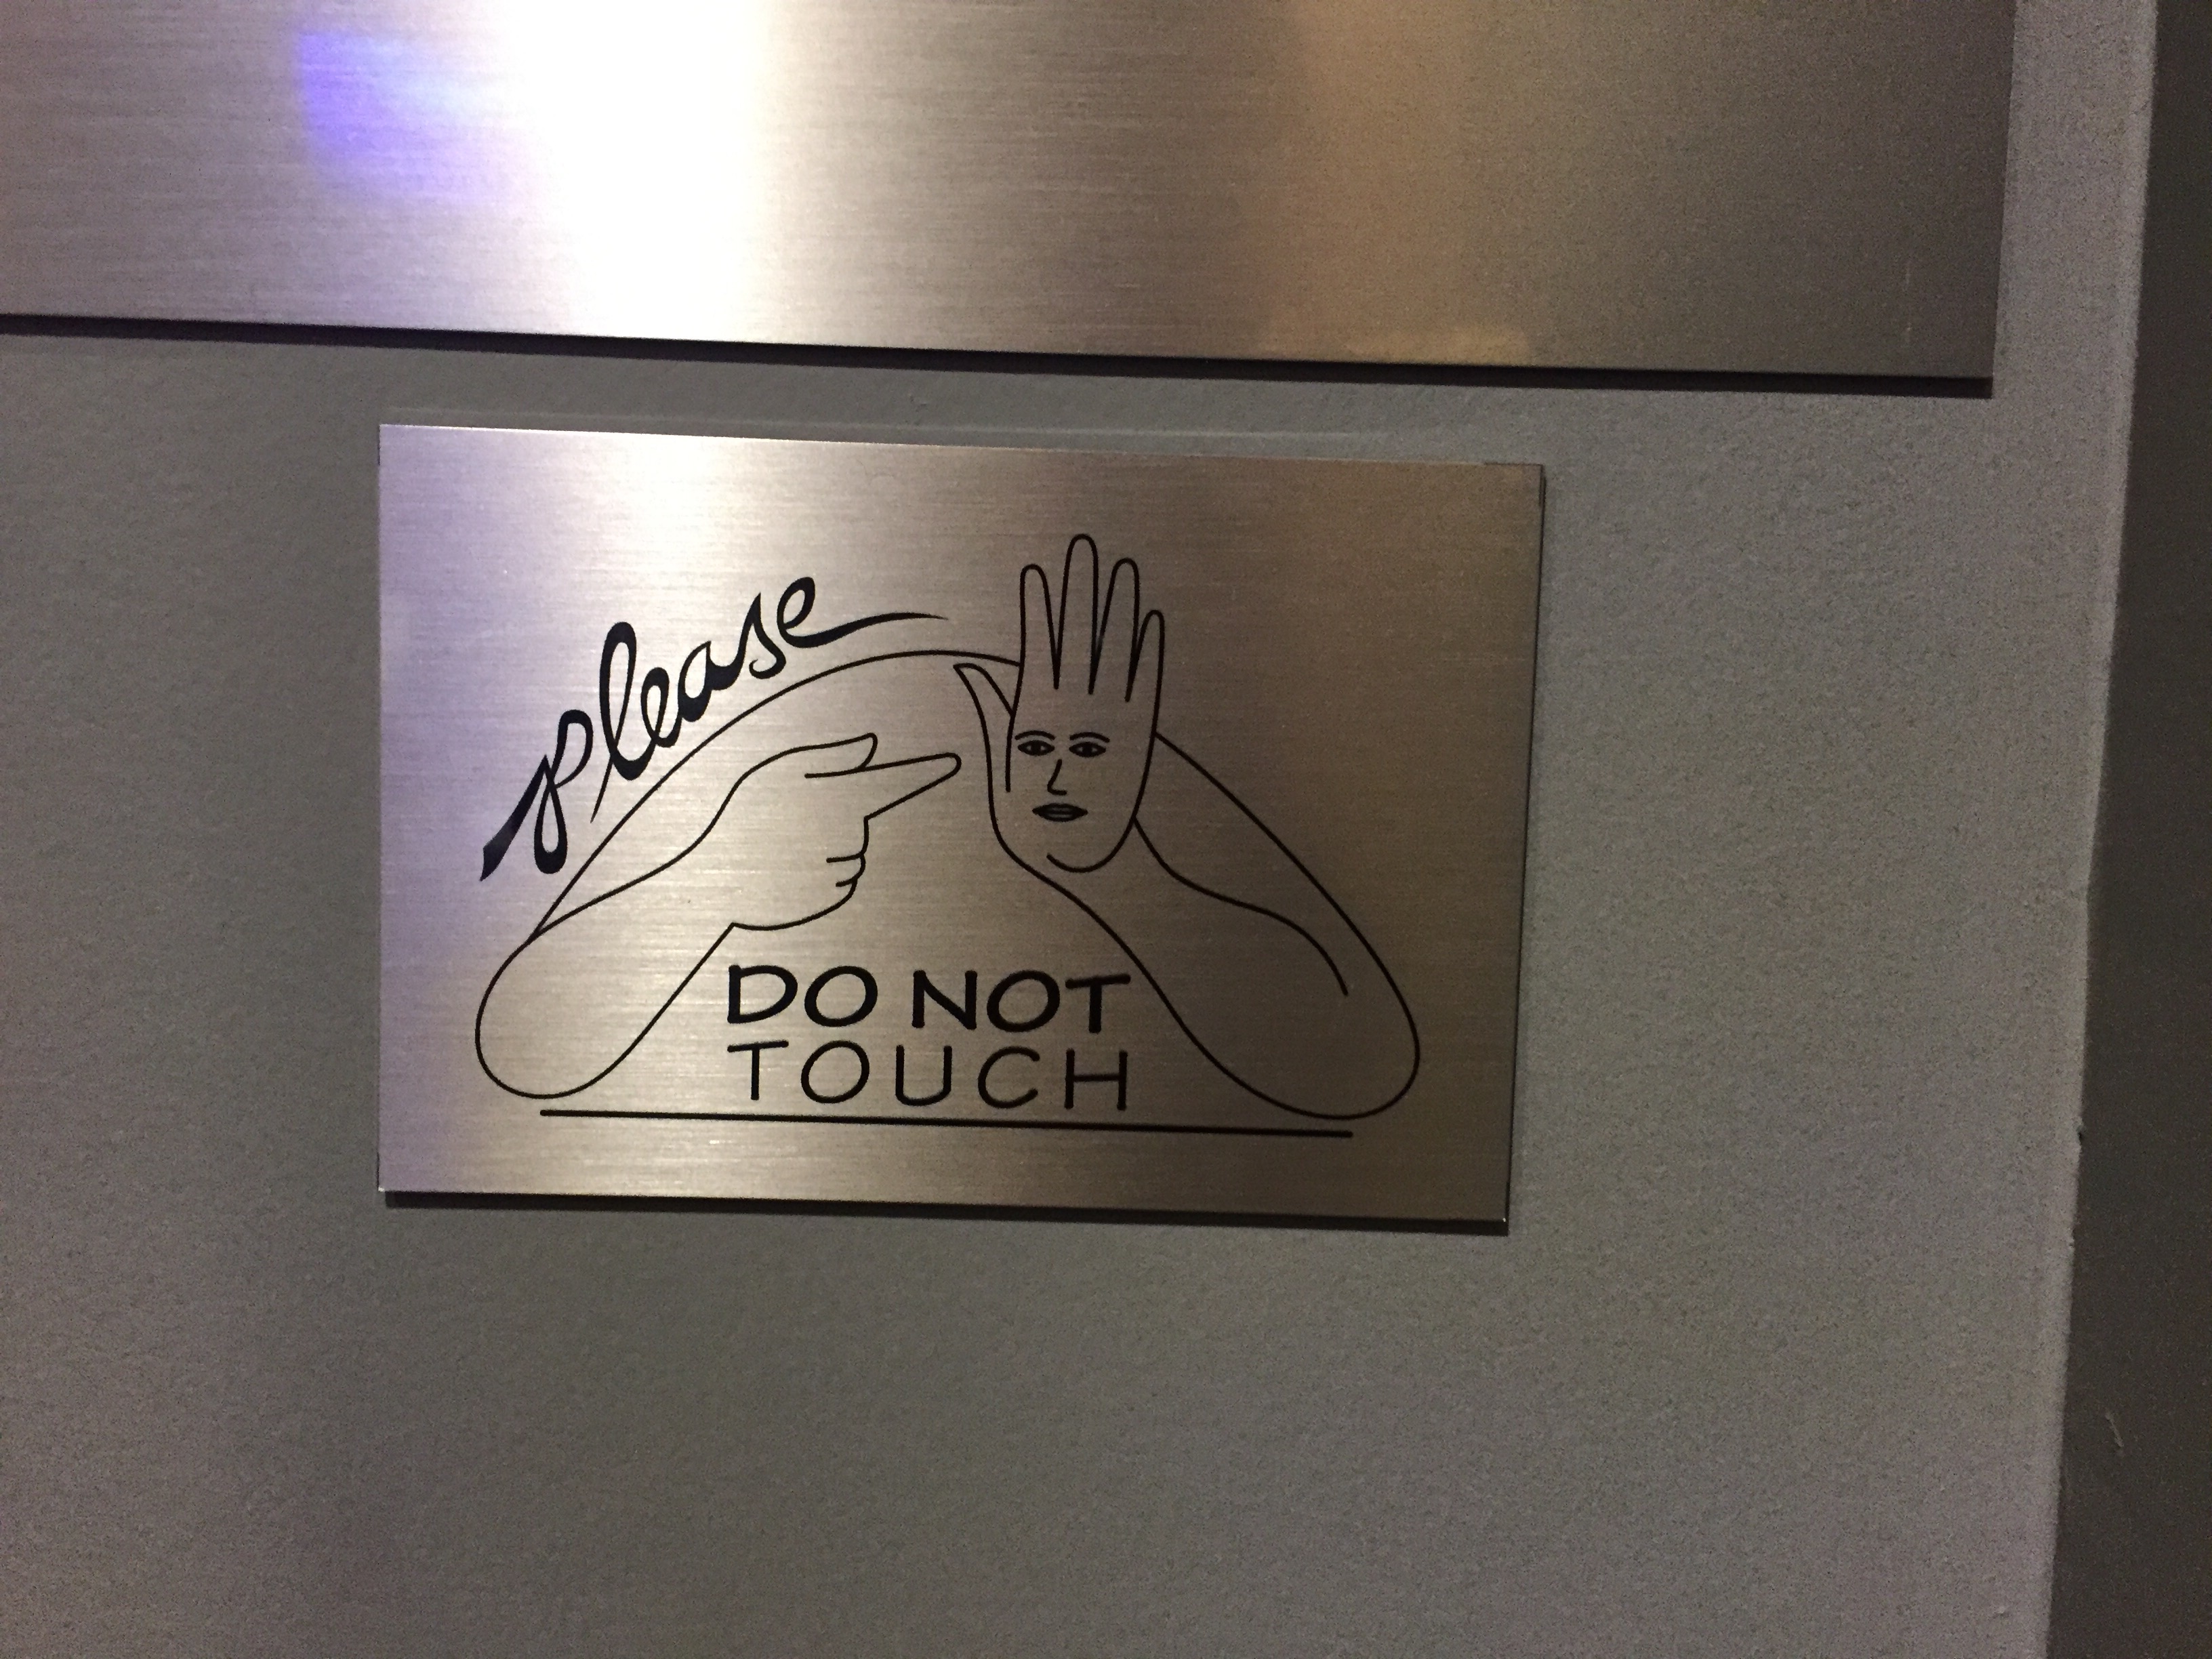 A weird do not touch sign